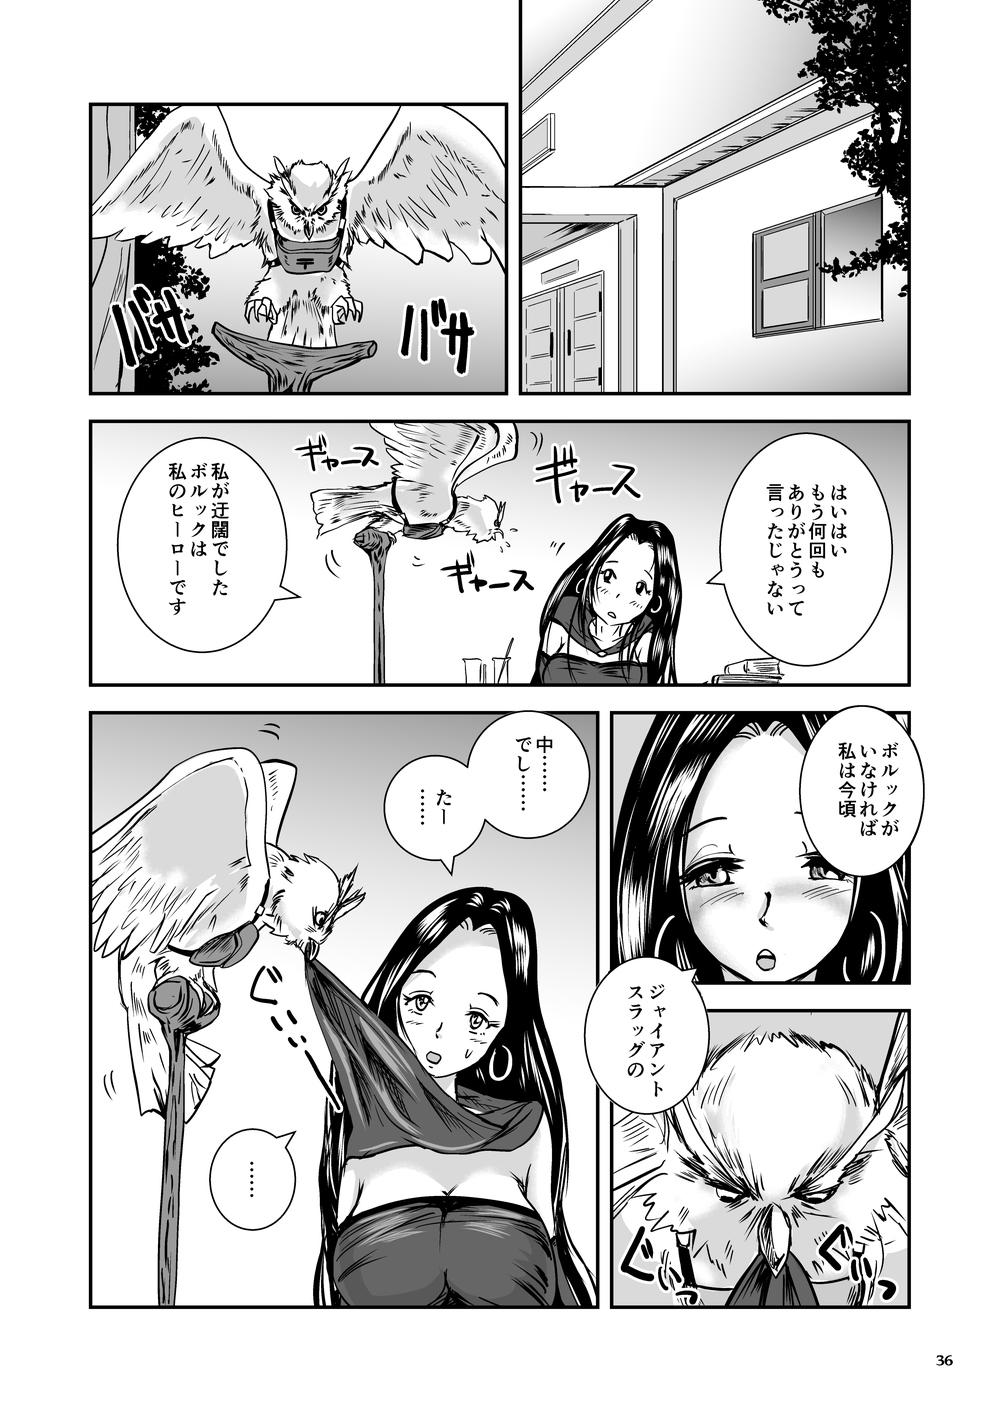 Oonamekuji to Kurokami no Mahoutsukai - Parasitized Giant Slugs V.S. Sorceress of the Black Hair as Aura 35